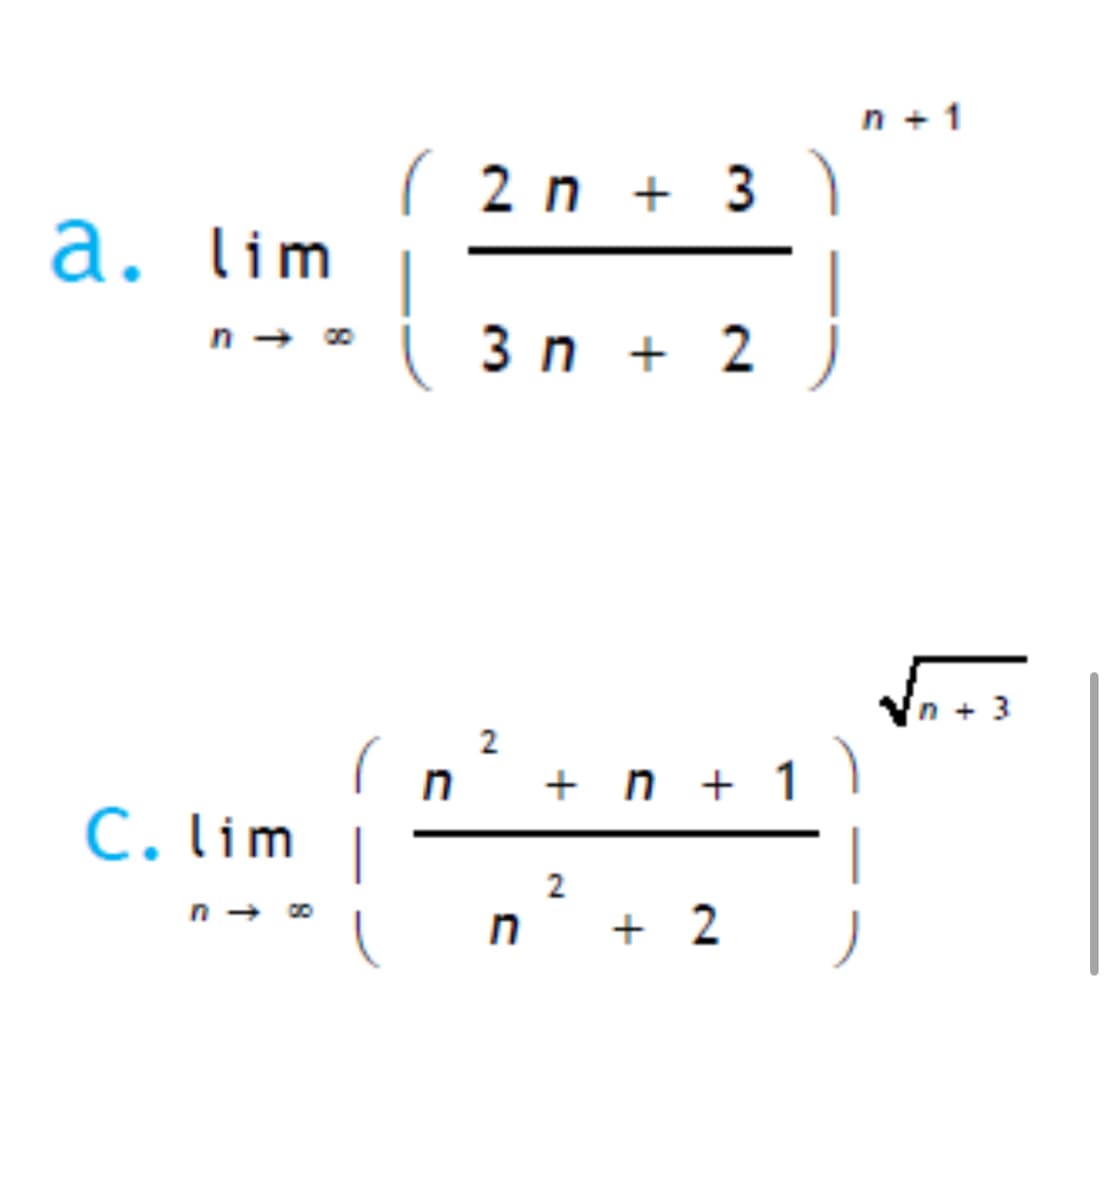 a. lim
818
( 2 n + 3 )
2n+3
3n+ 2 )
n+1
C. lim
n → ∞
n² + n + 1
2
n + 2
√n + 3